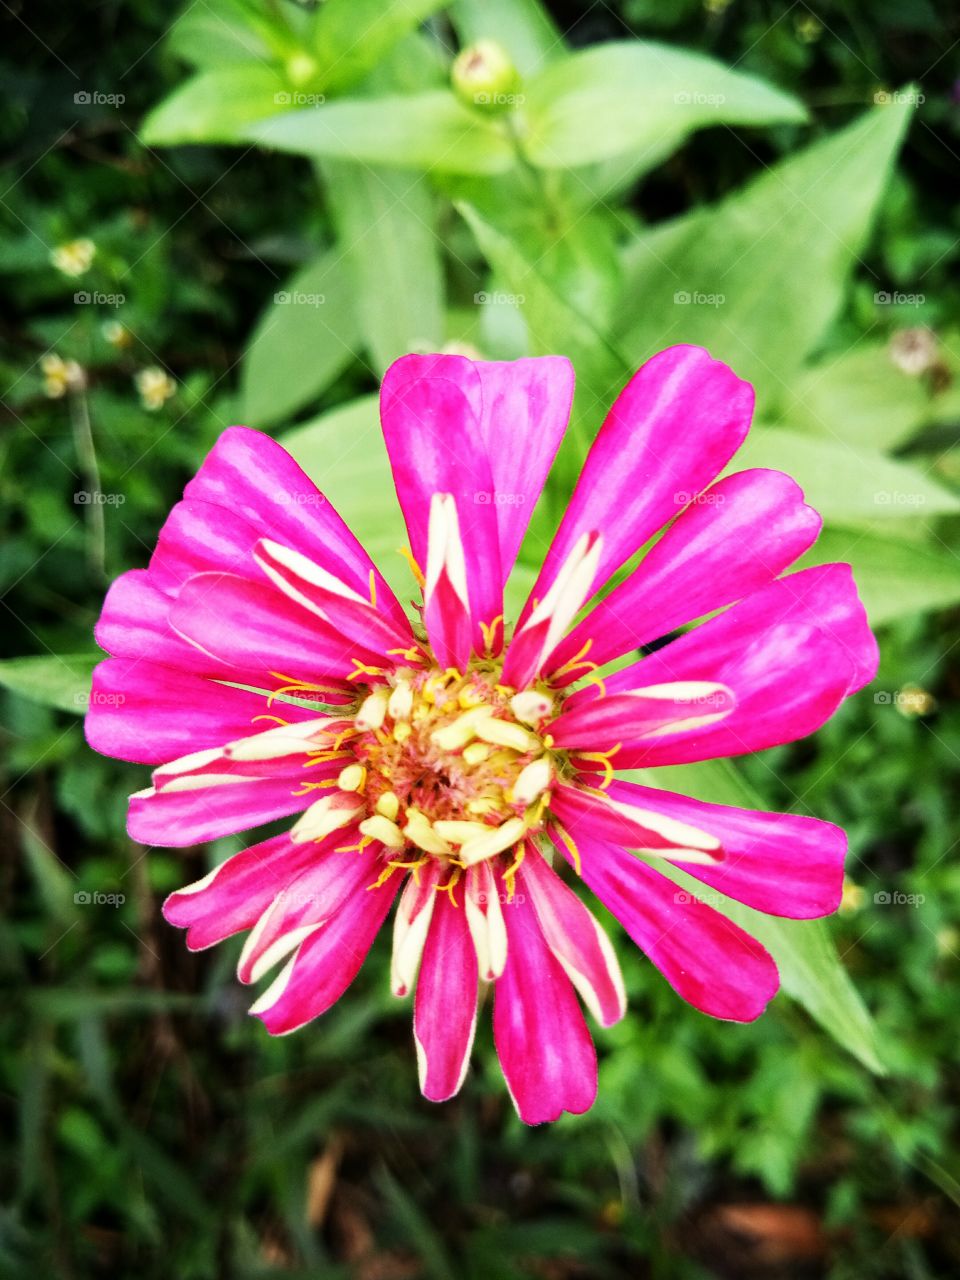 flower
pink
thailand